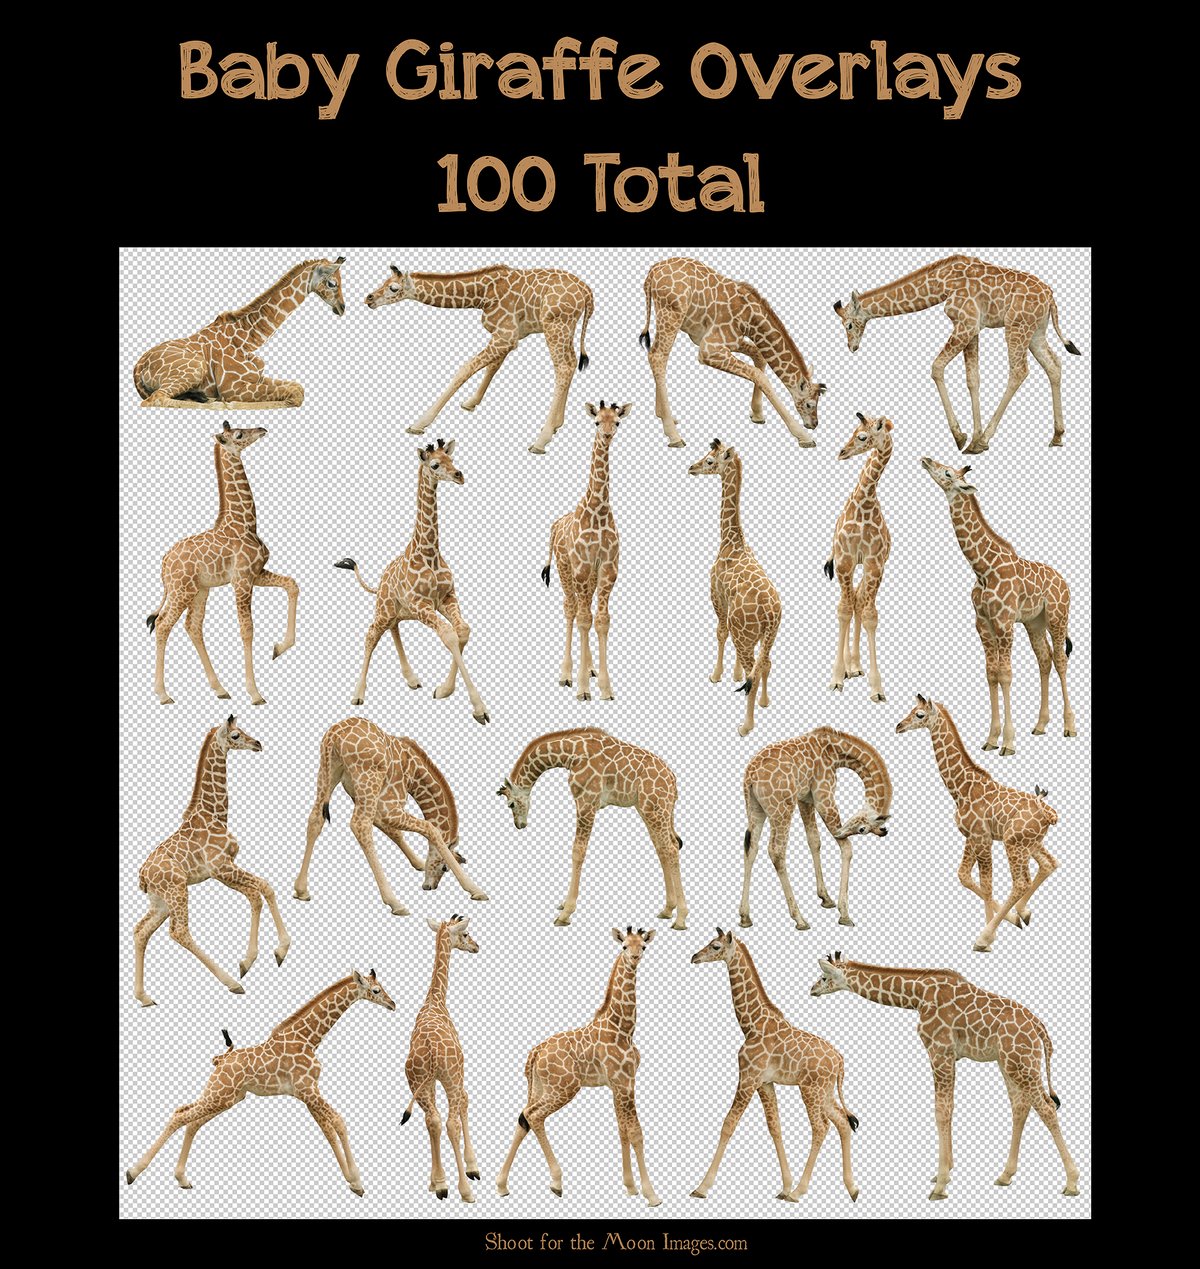 Image of Baby Giraffe Overlays